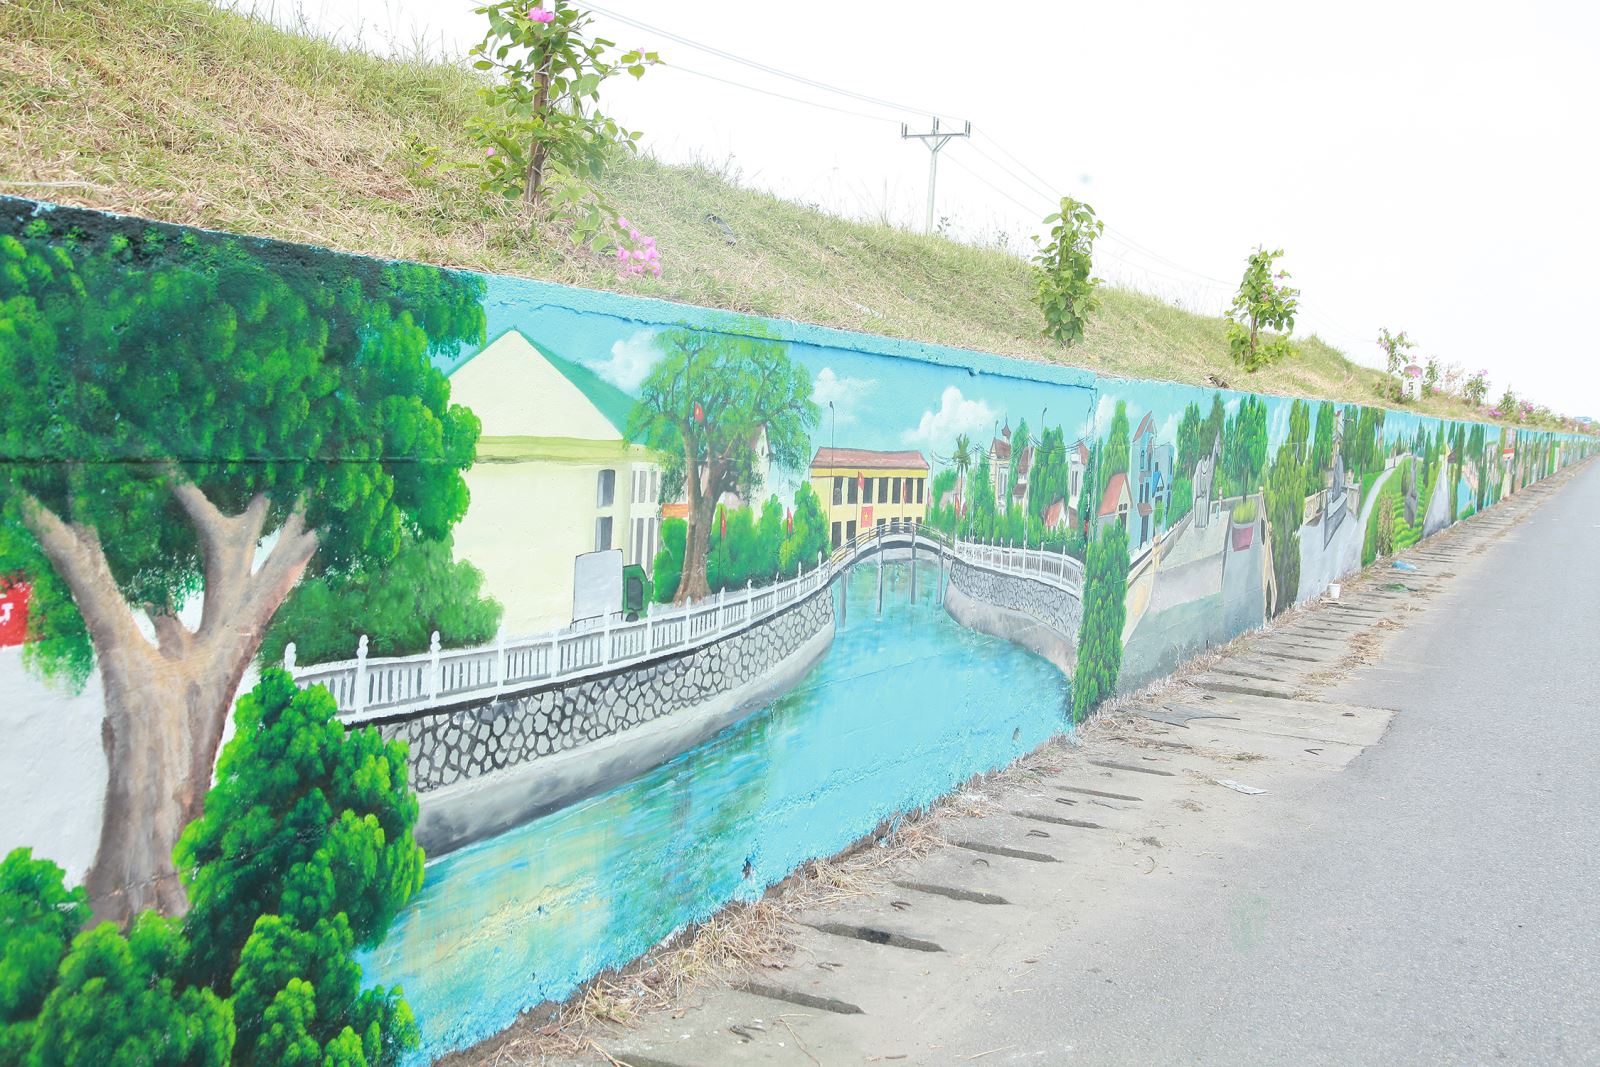 Khám phá con đường bích họa đa sắc màu ở ngoại thành Hà Nội